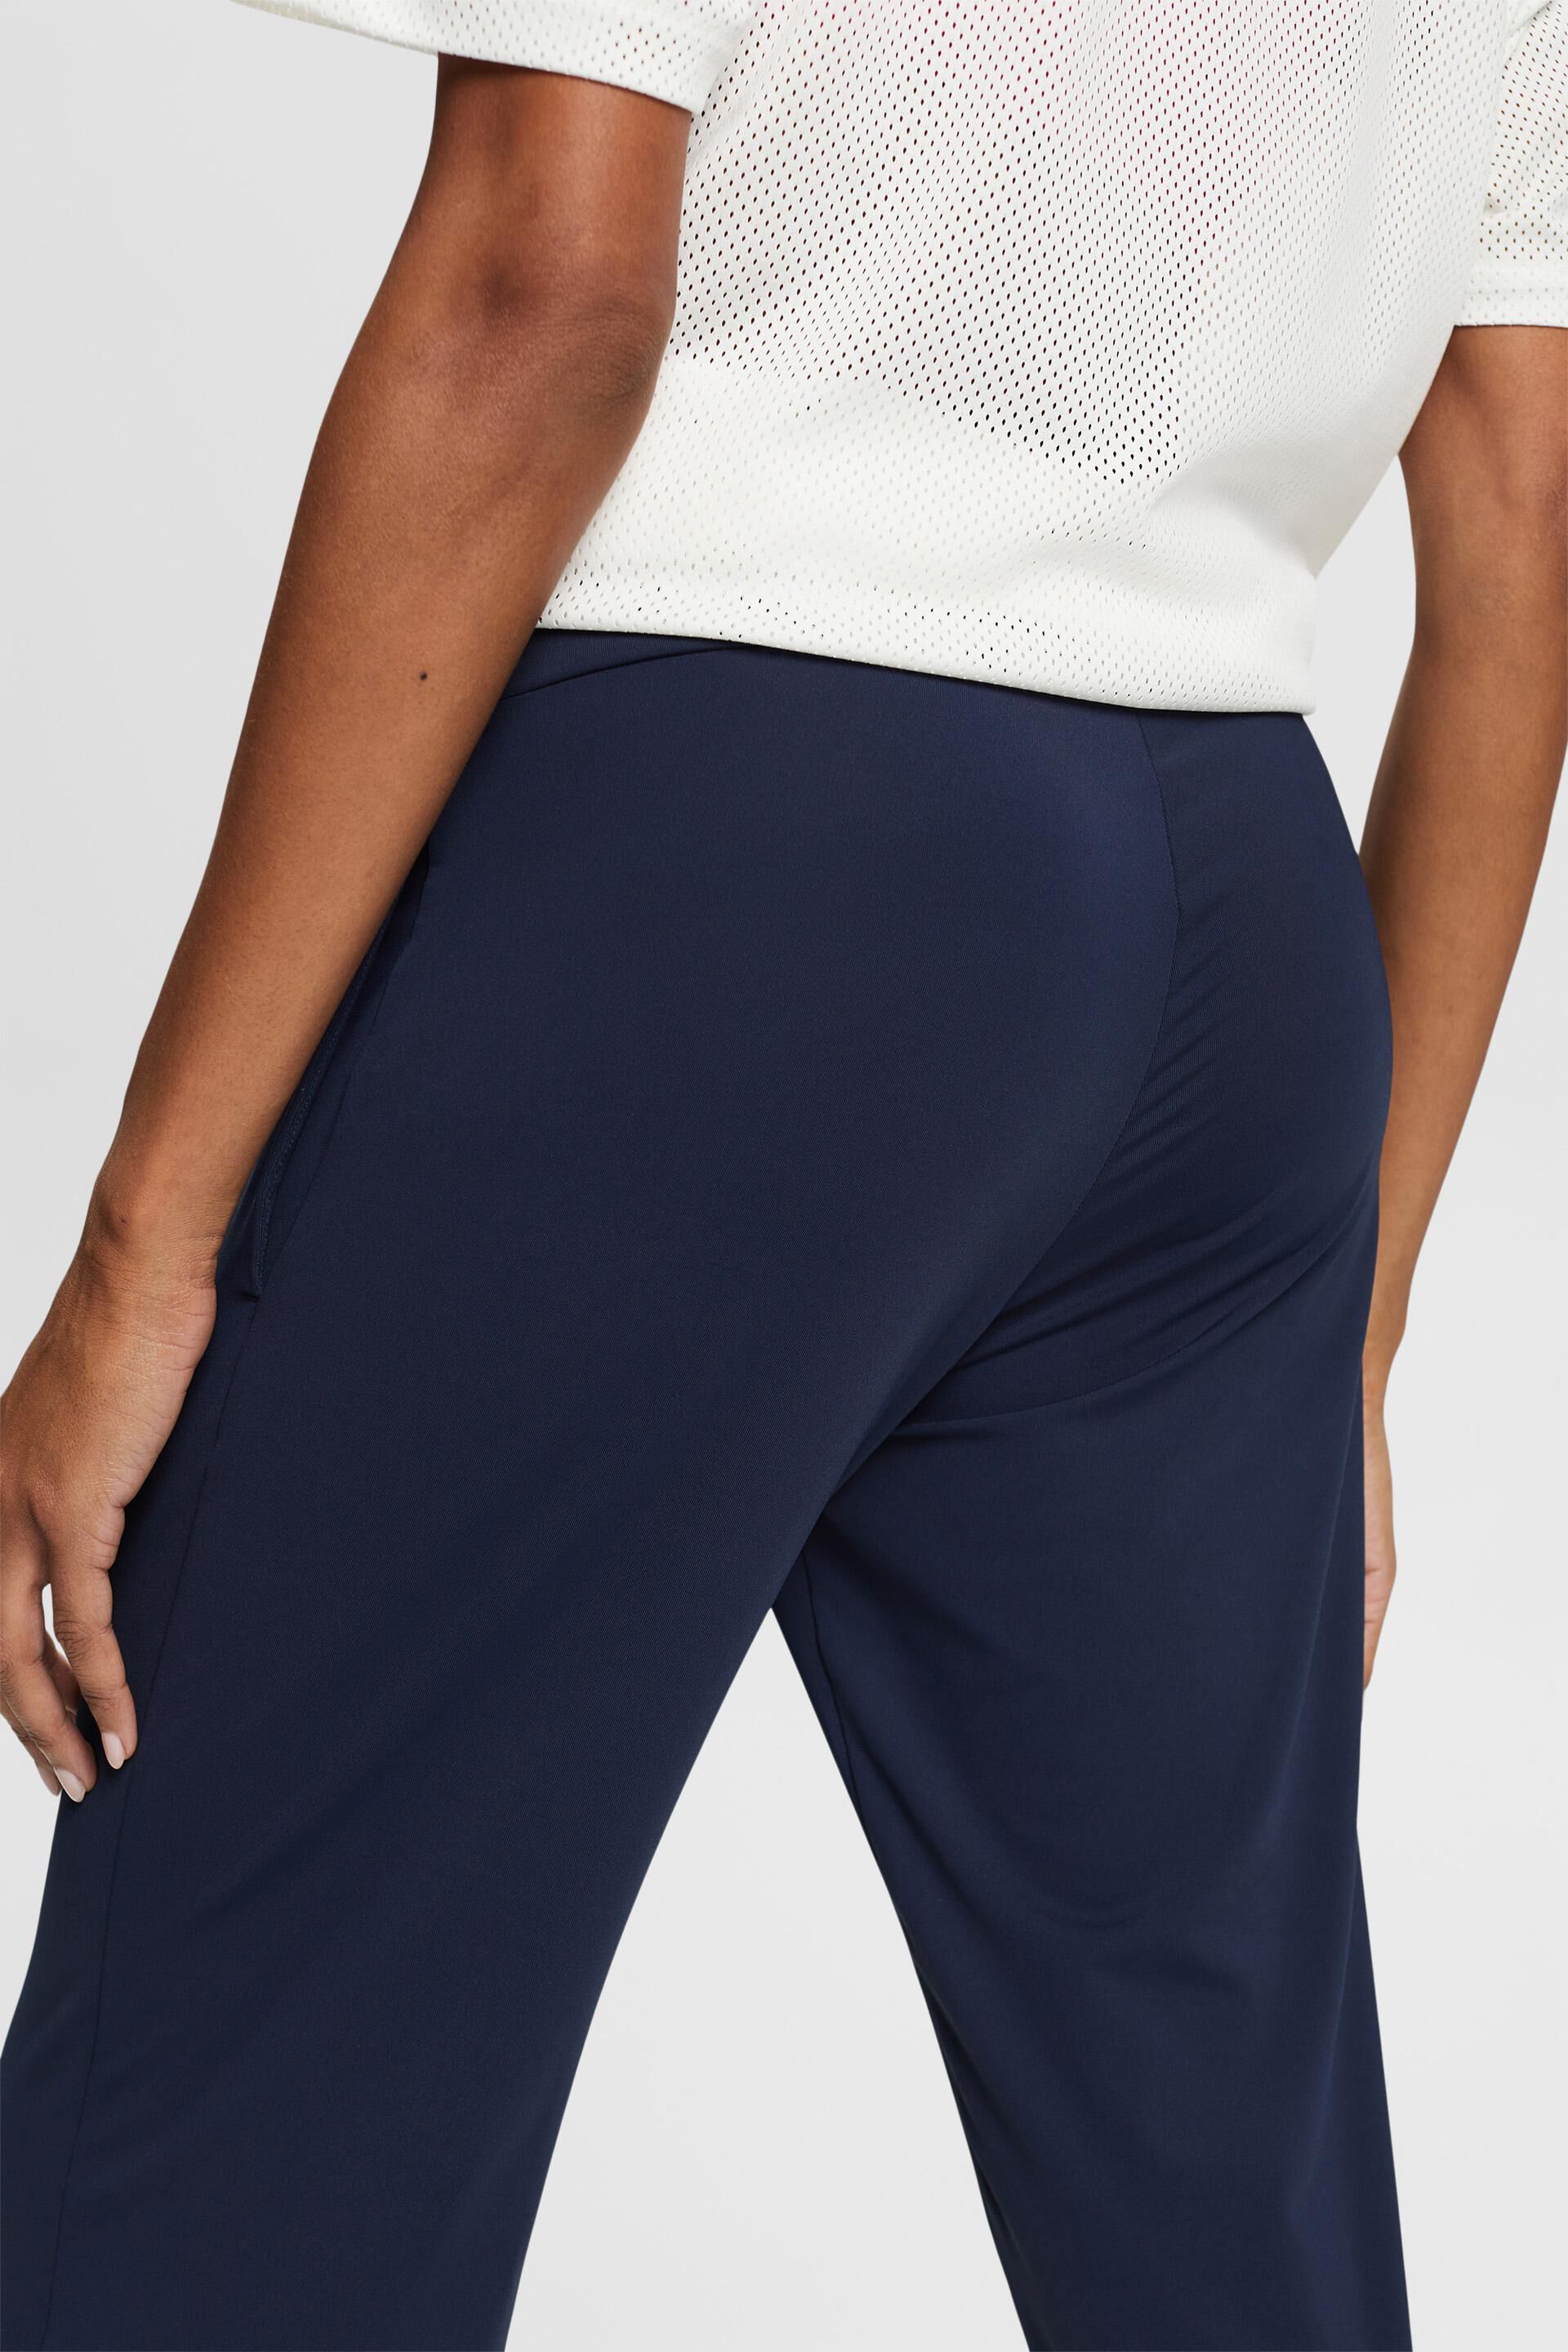 Pantalons de Survêtement Femme Cinch Élastique Taille Haute Danse Jogger  Sport Dames Casual Coton Pantalons Amples Poches 